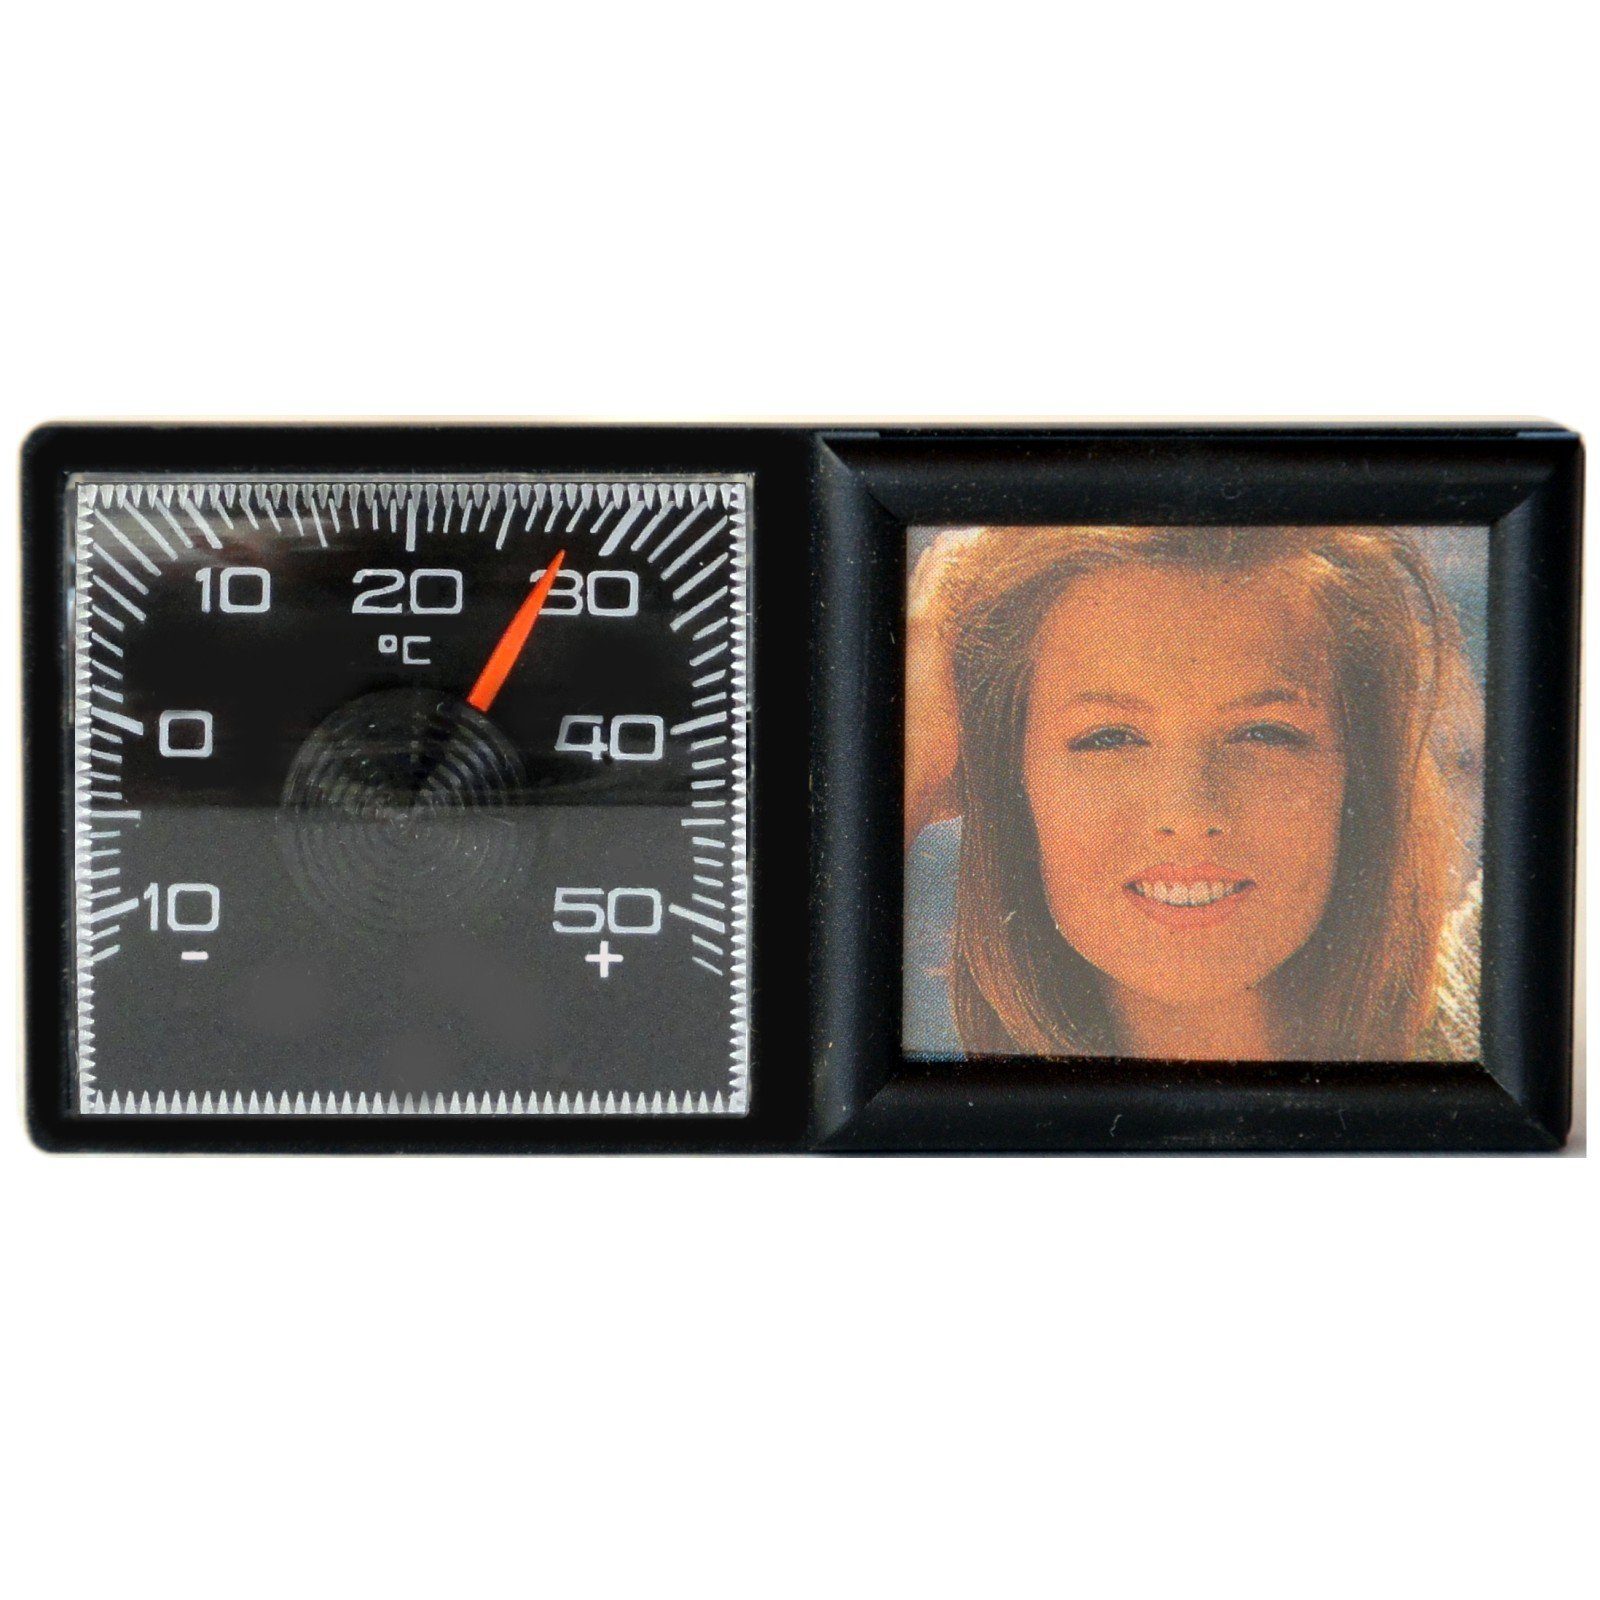 HR Autocomfort Bilderrahmen-Set Thermometer Fotorahmen Bilderrahmen Vergiss mein nicht + Magnet Halter, für 1 Bilder